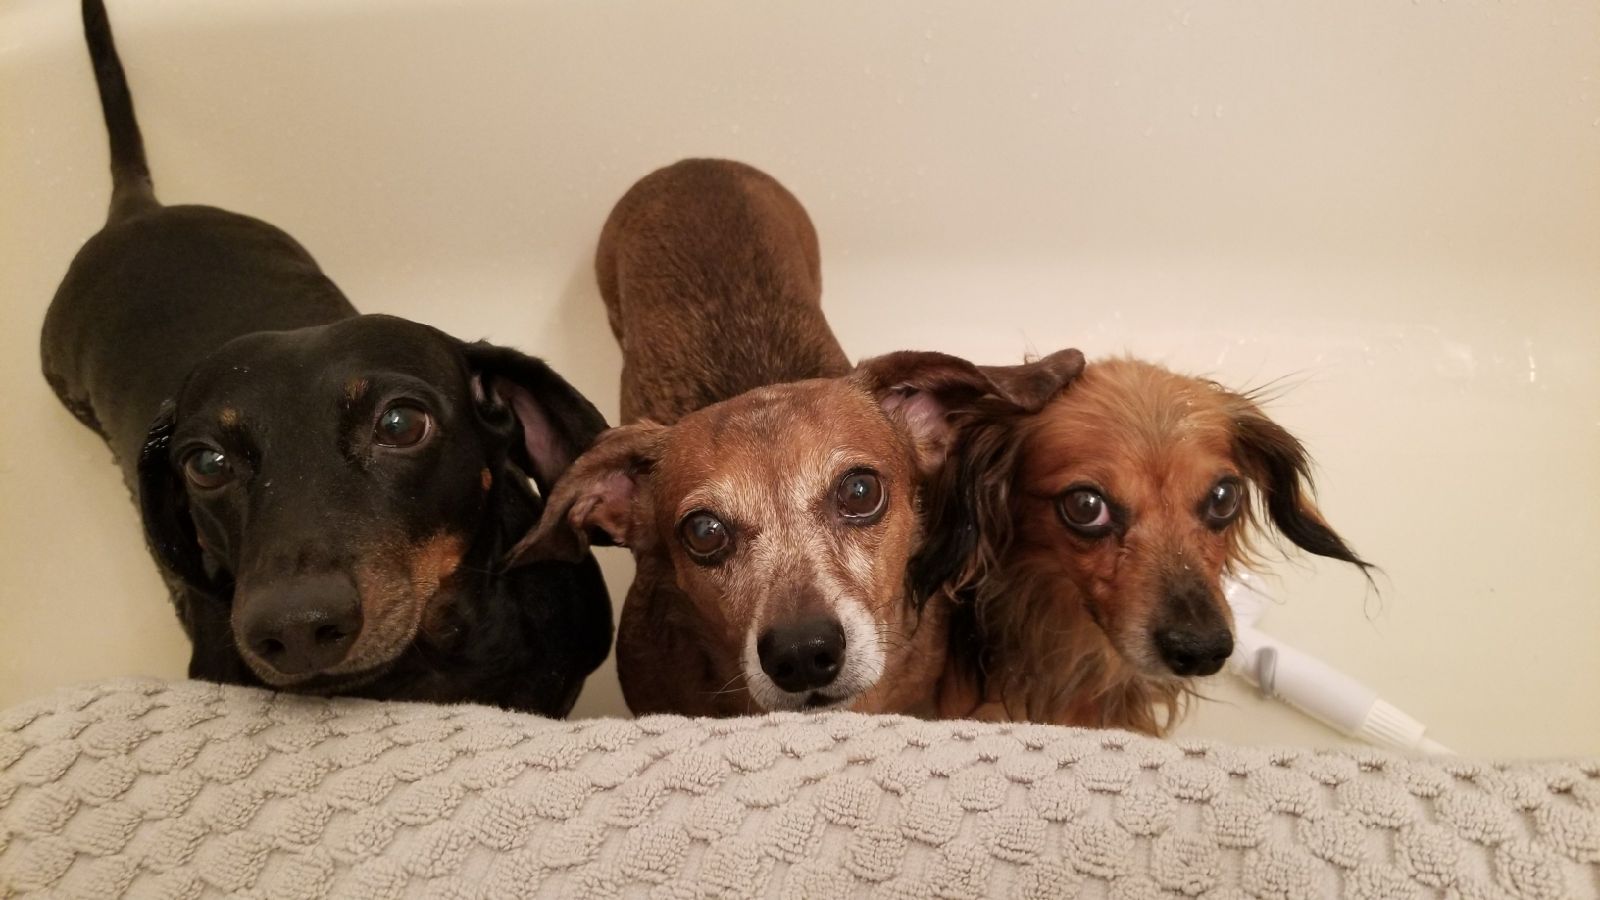 Rub a dub dub 3 pups in a tub